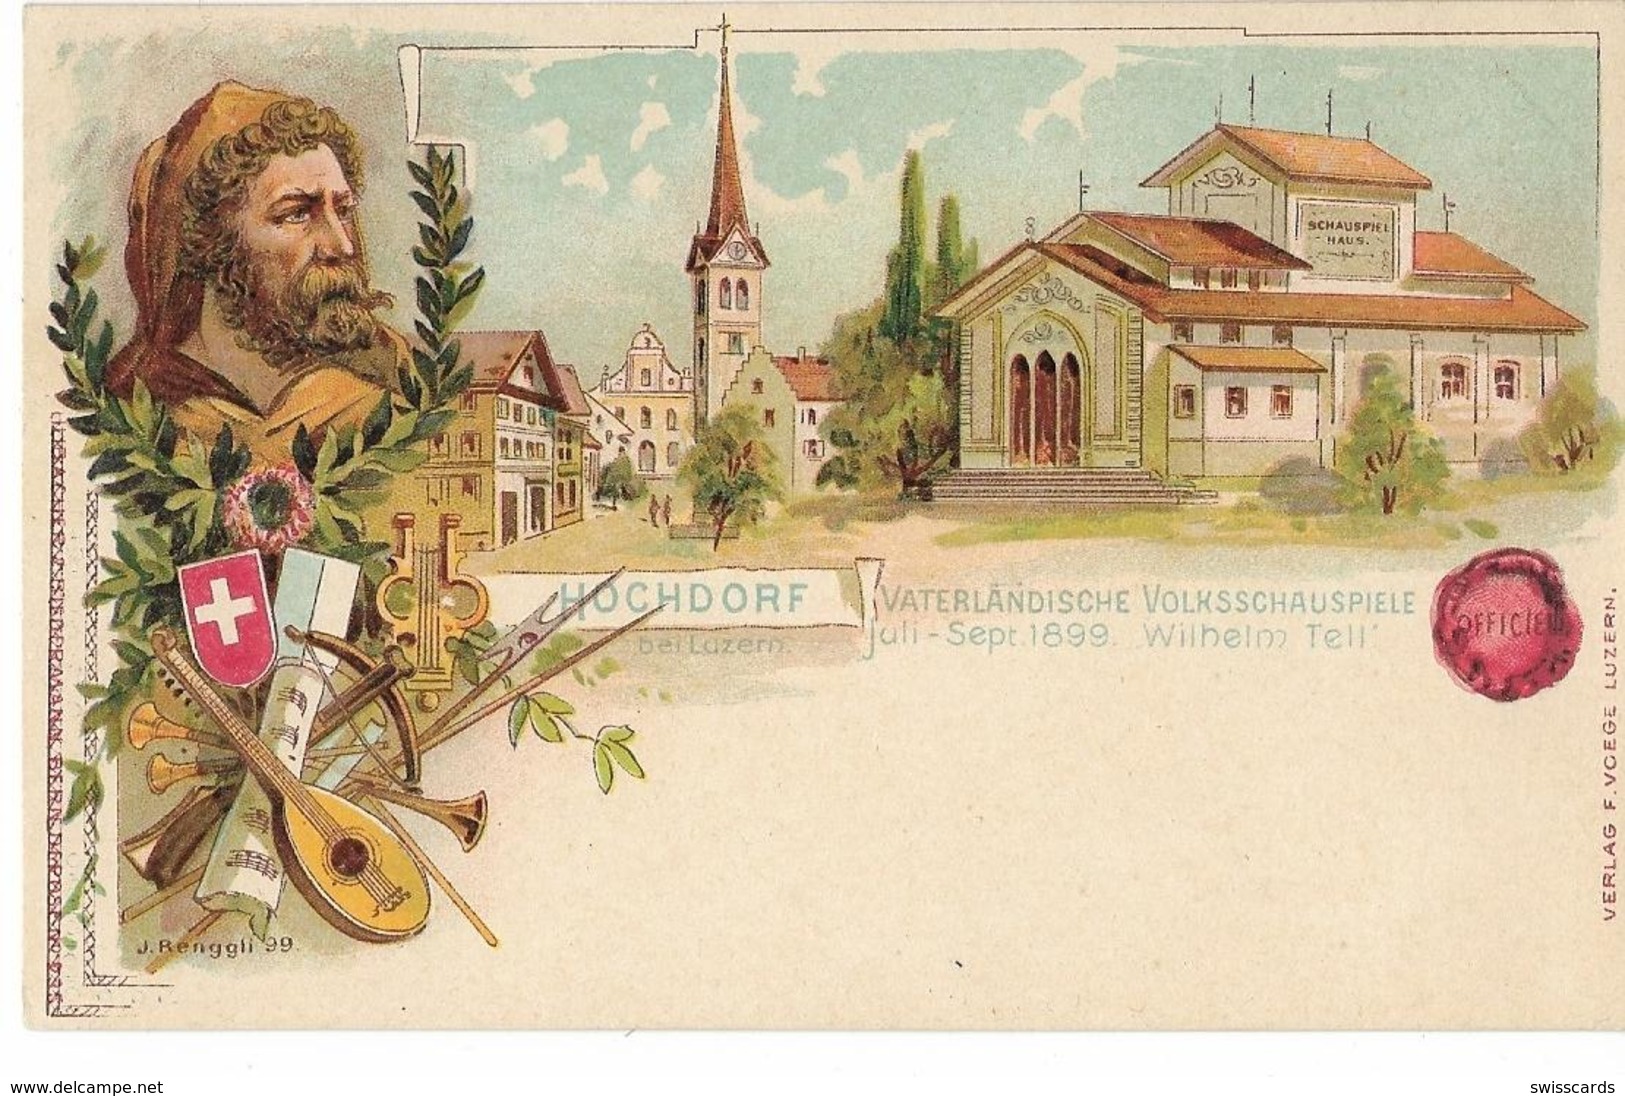 HOCHDORF: Vaterländische Volksschauspiele, Litho 1899 - Hochdorf